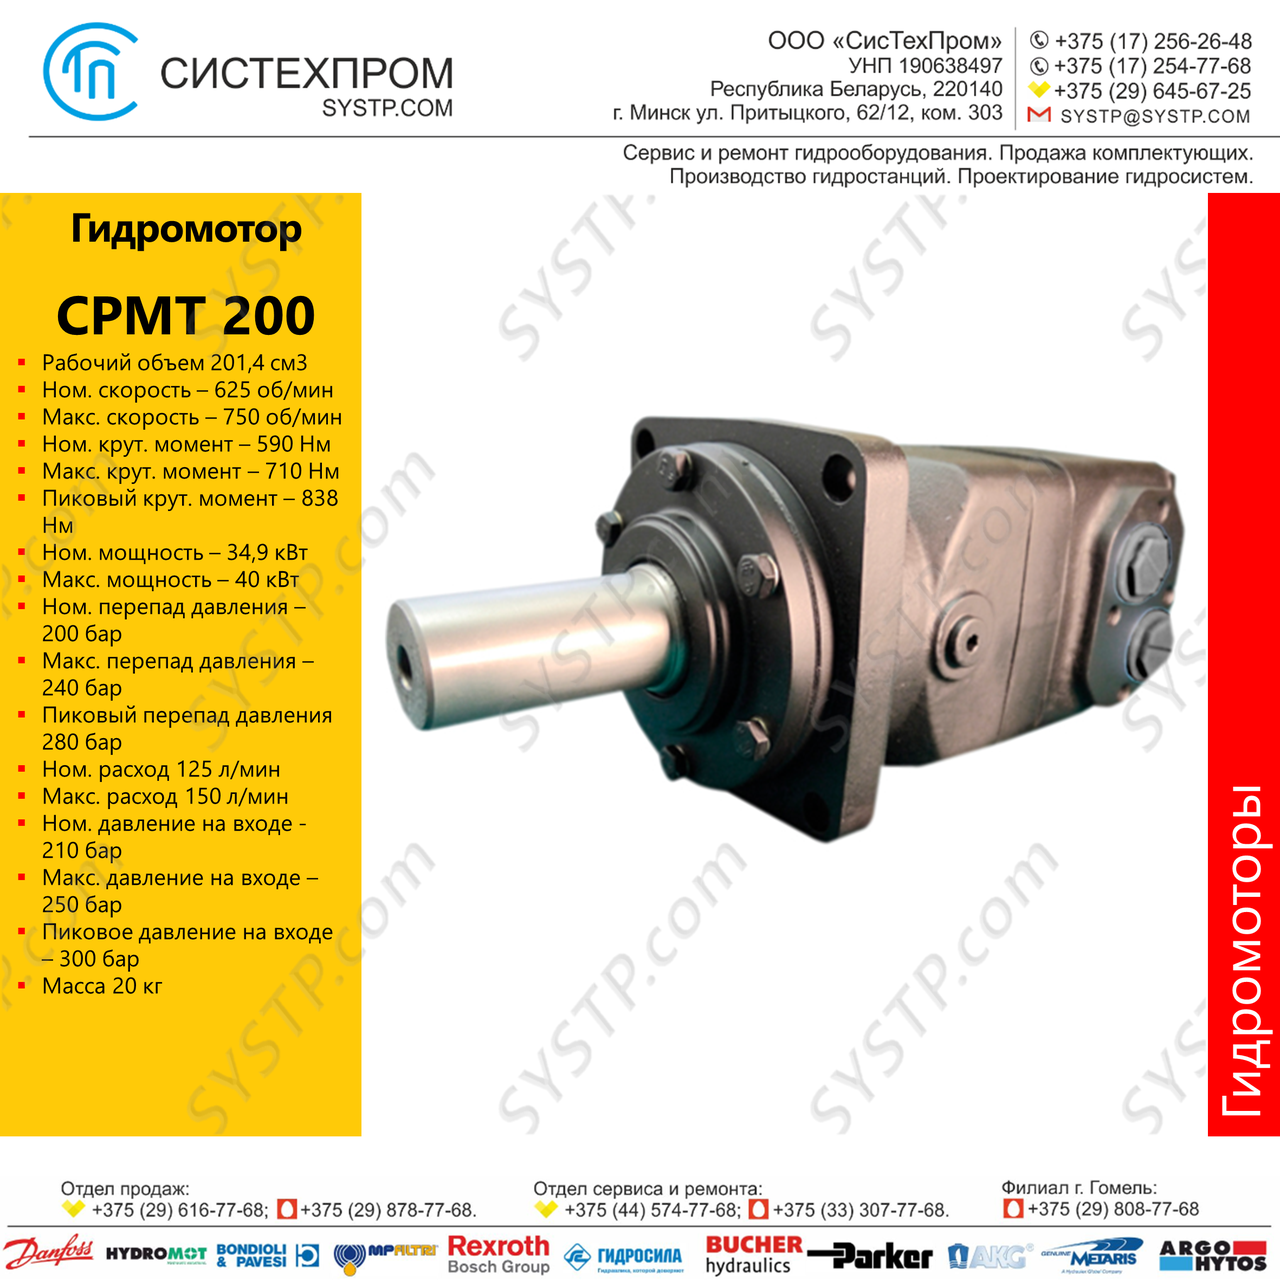 Гидромотор CPMT 200, фото 1